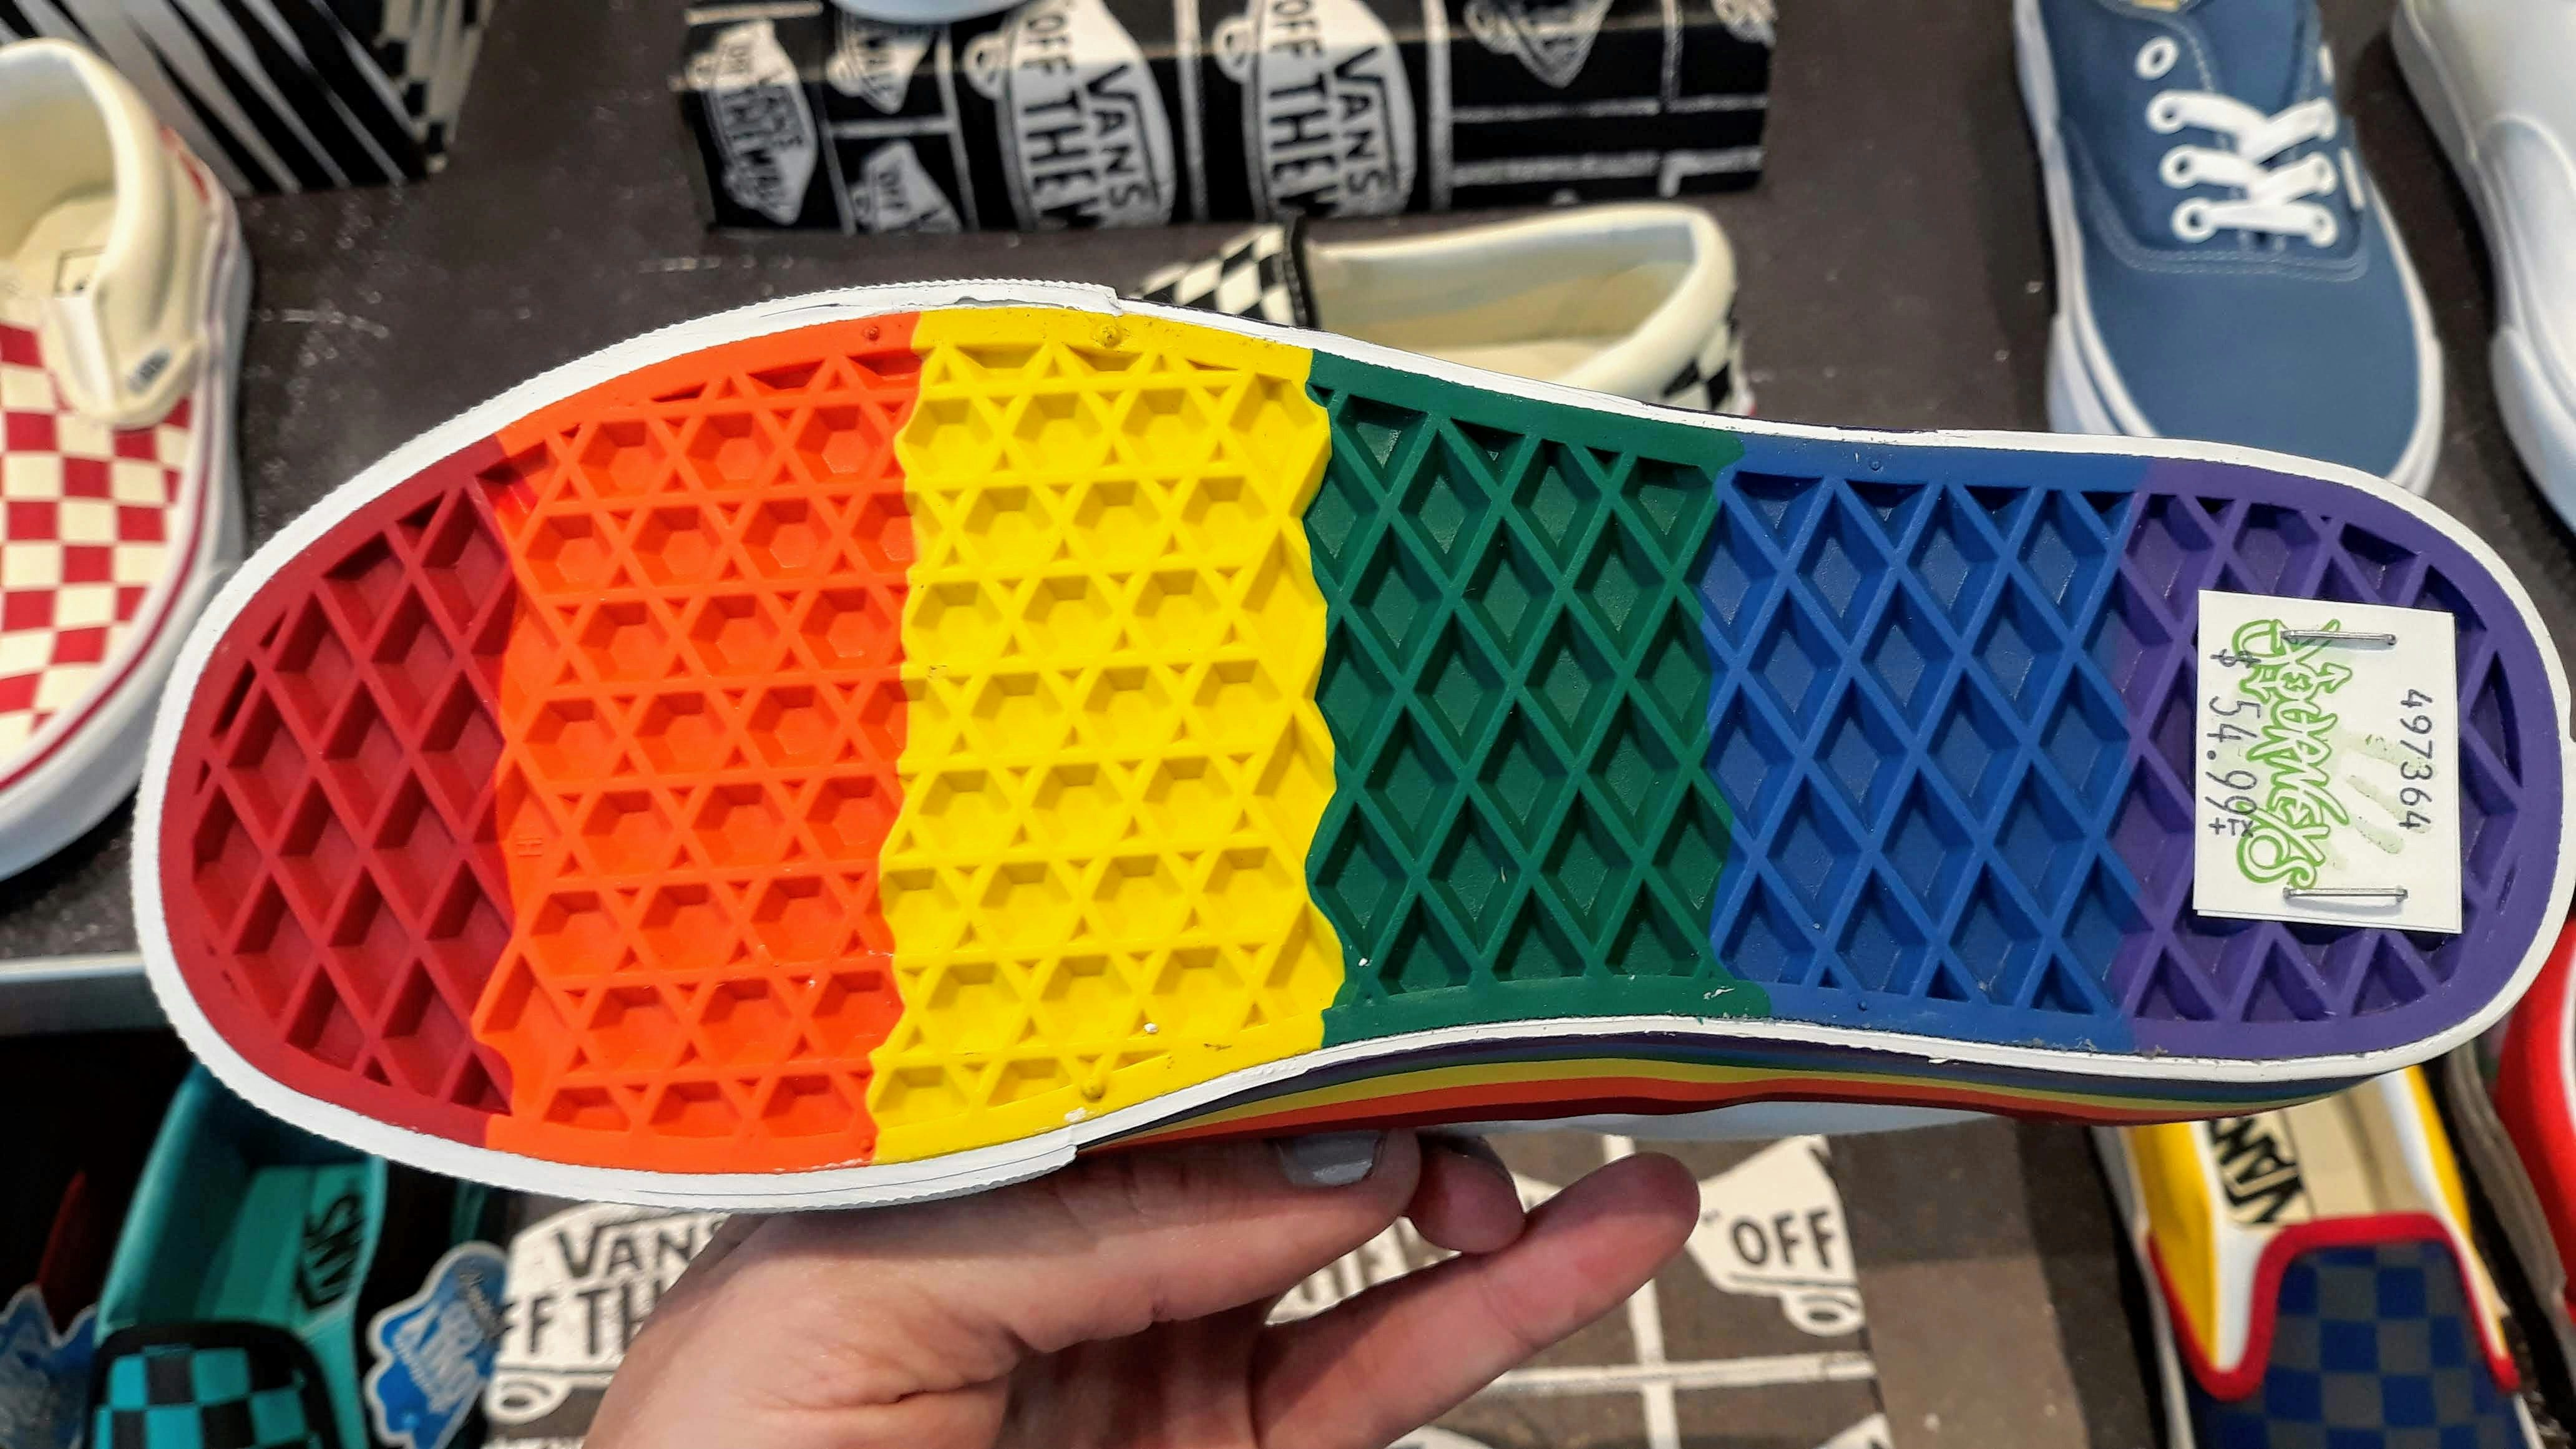 vans gay pride shoes